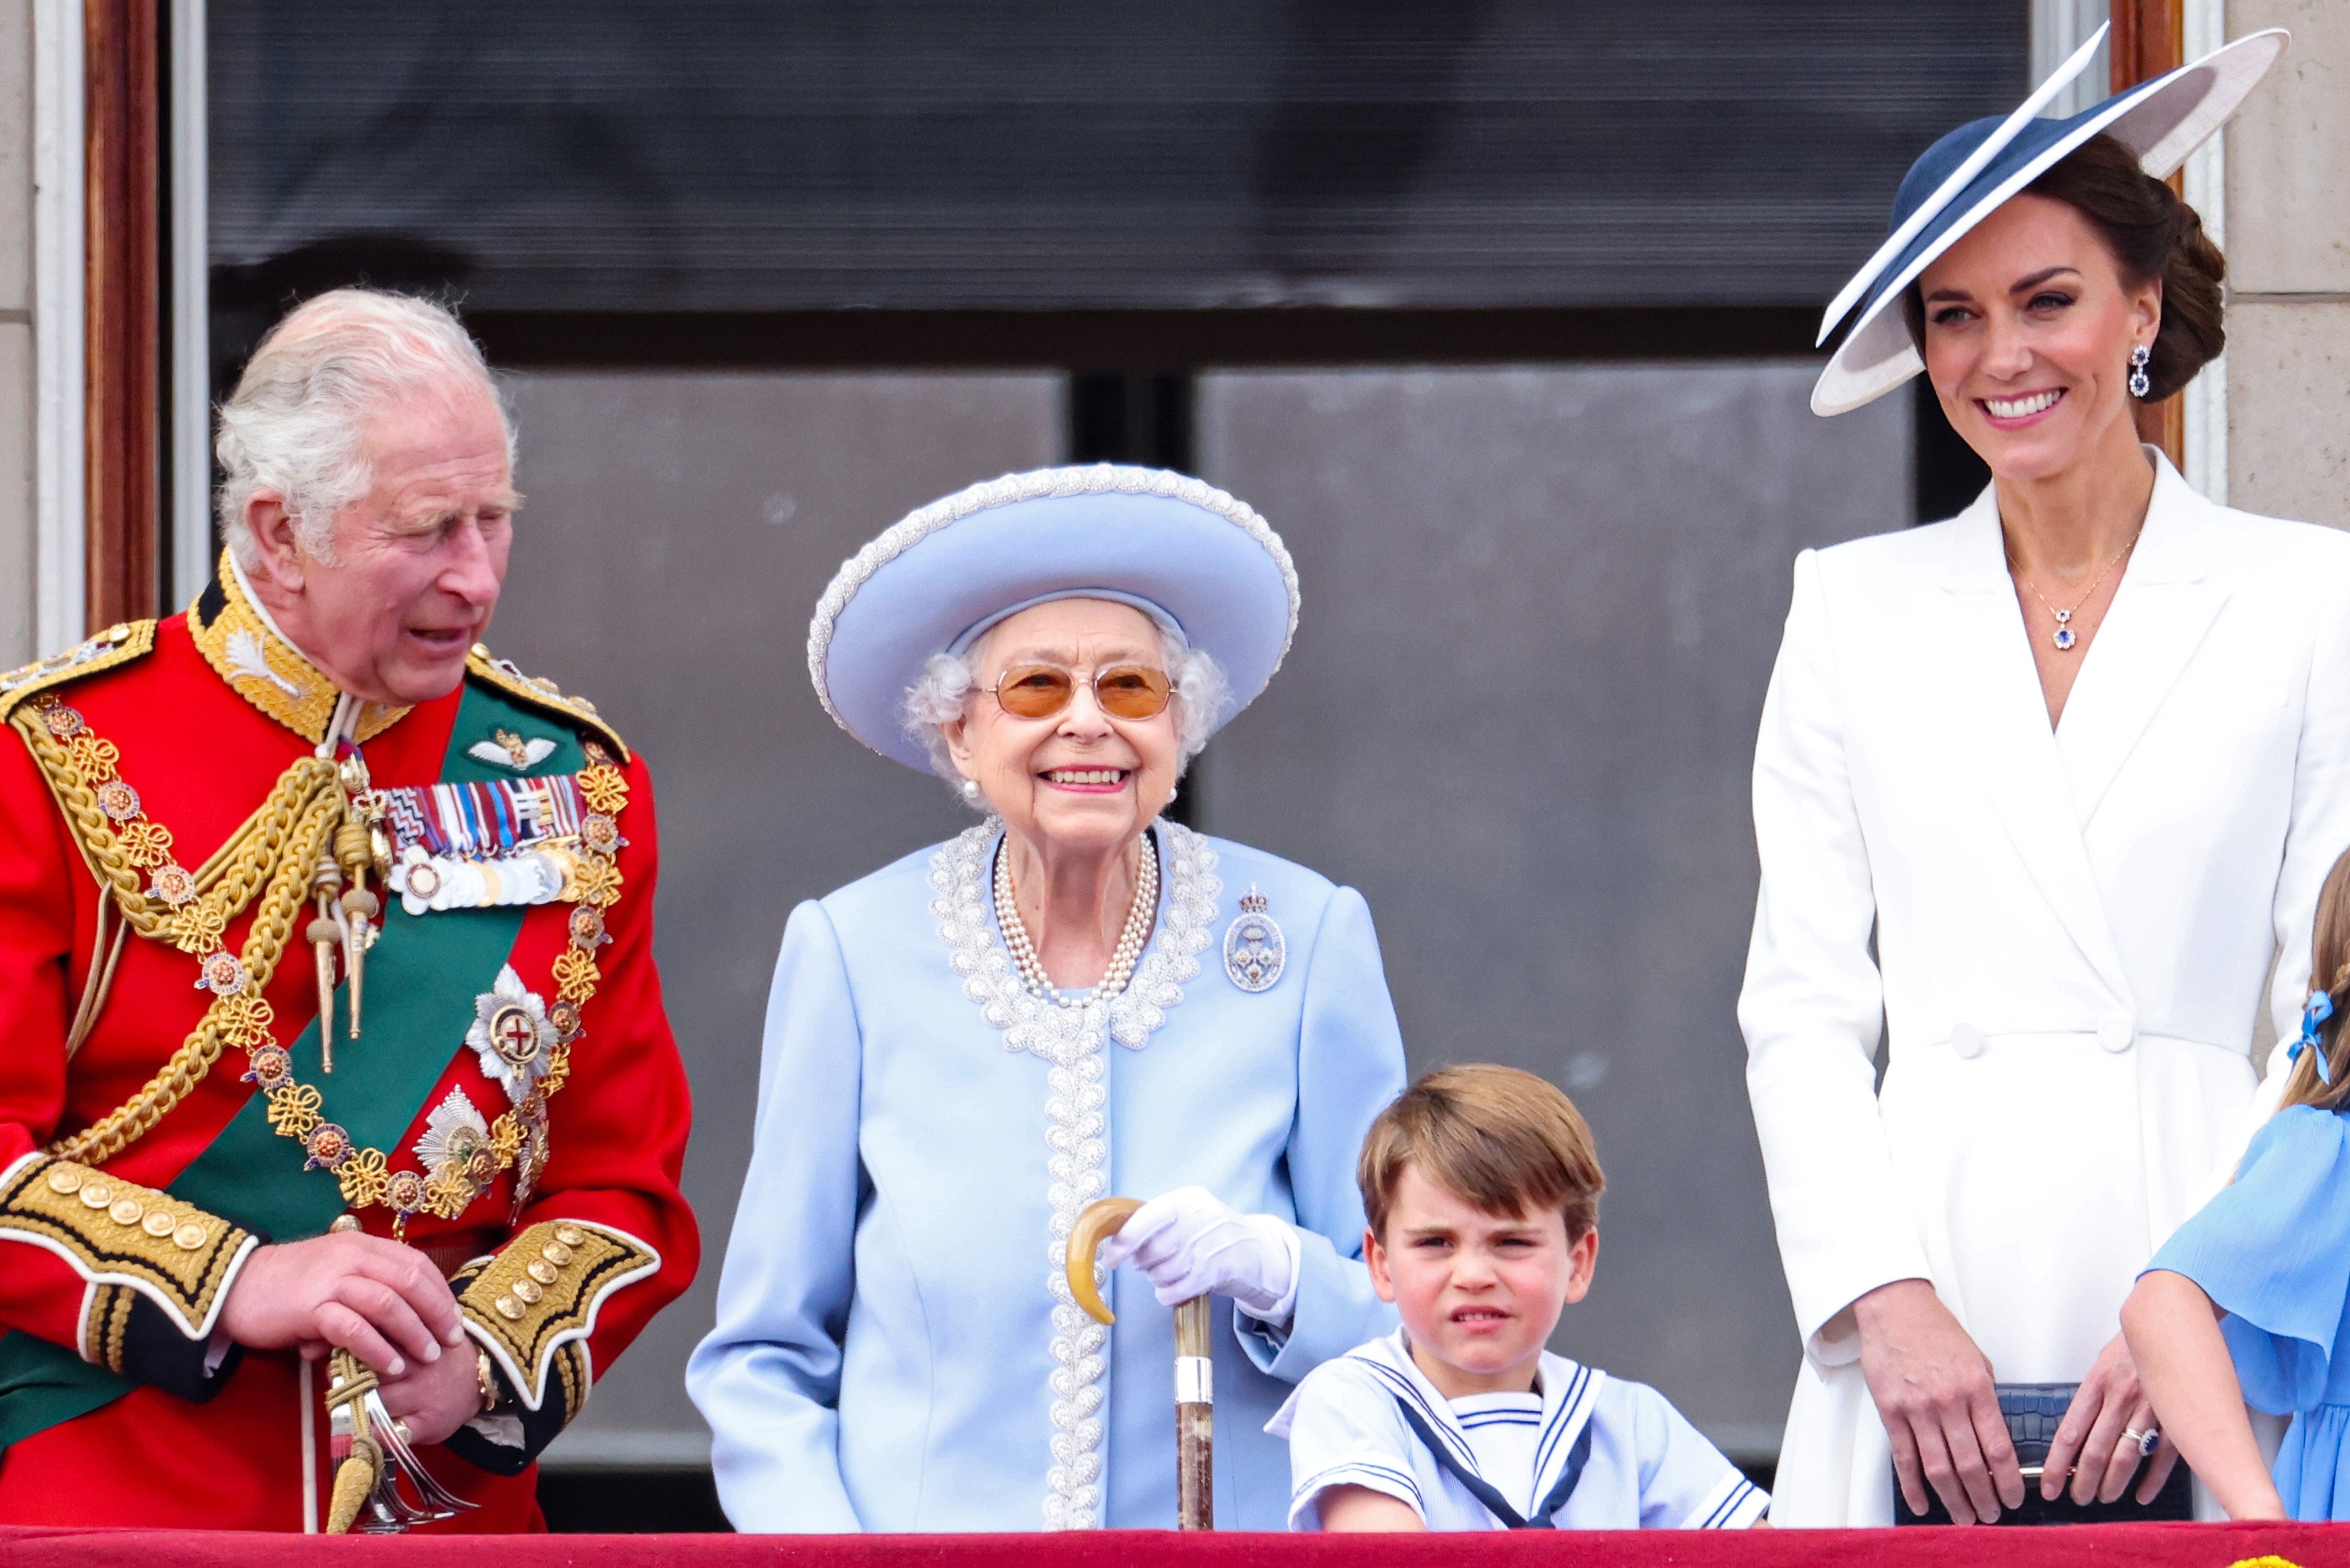 The royal family (Chris Jackson/PA)